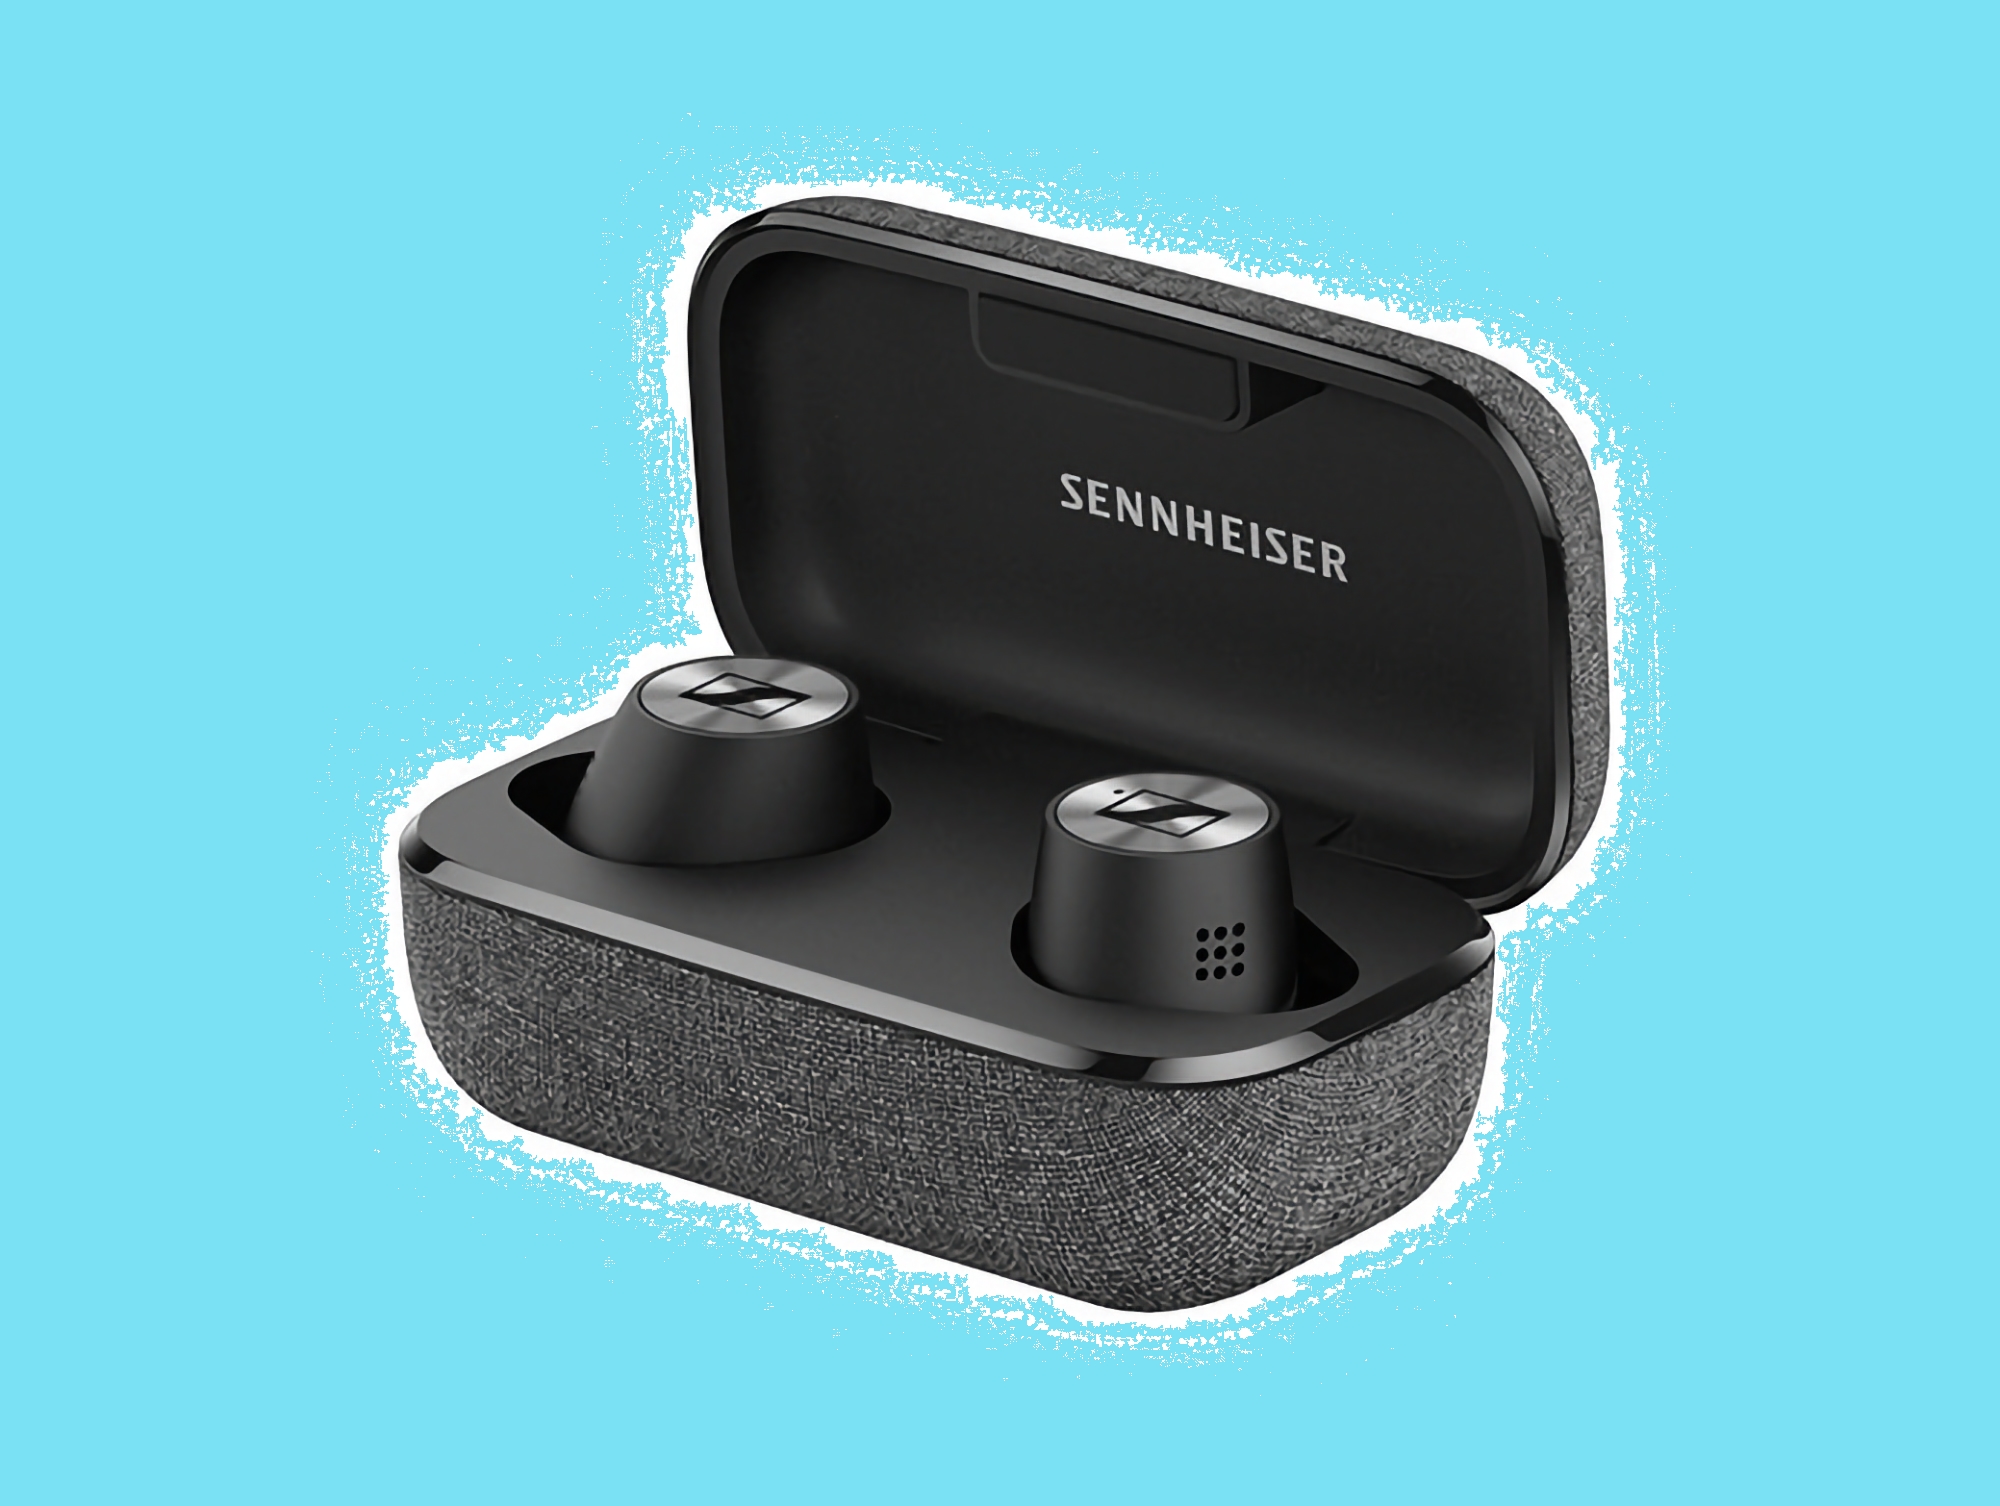 Знижка 57%: Sennheiser Momentum True Wireless 2 доступні на Amazon за акційною ціною